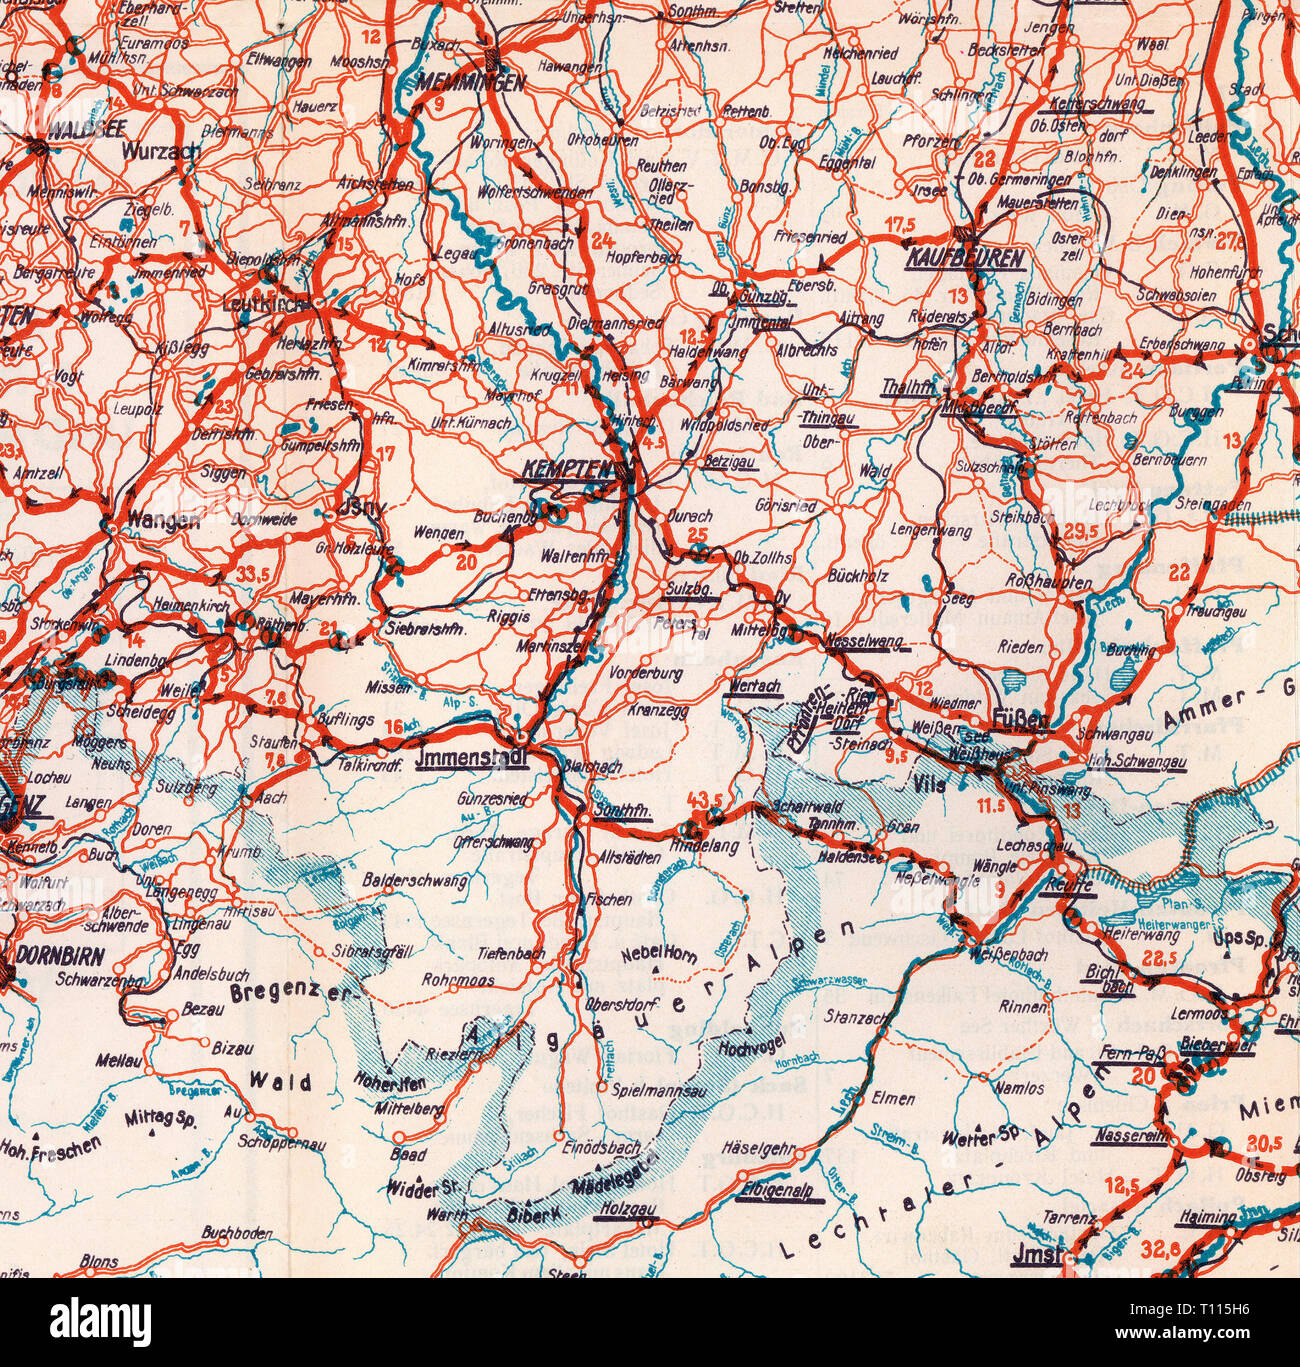 Cartografia, mappe, Allgaeu, mappa stradale numero 3, Highlands bavarese, Tirolo, Vorarlberg e territori limitrofi, dettaglio, Monaco di Baviera, più tardi 1920s, Additional-Rights-Clearance-Info-Not-Available Foto Stock